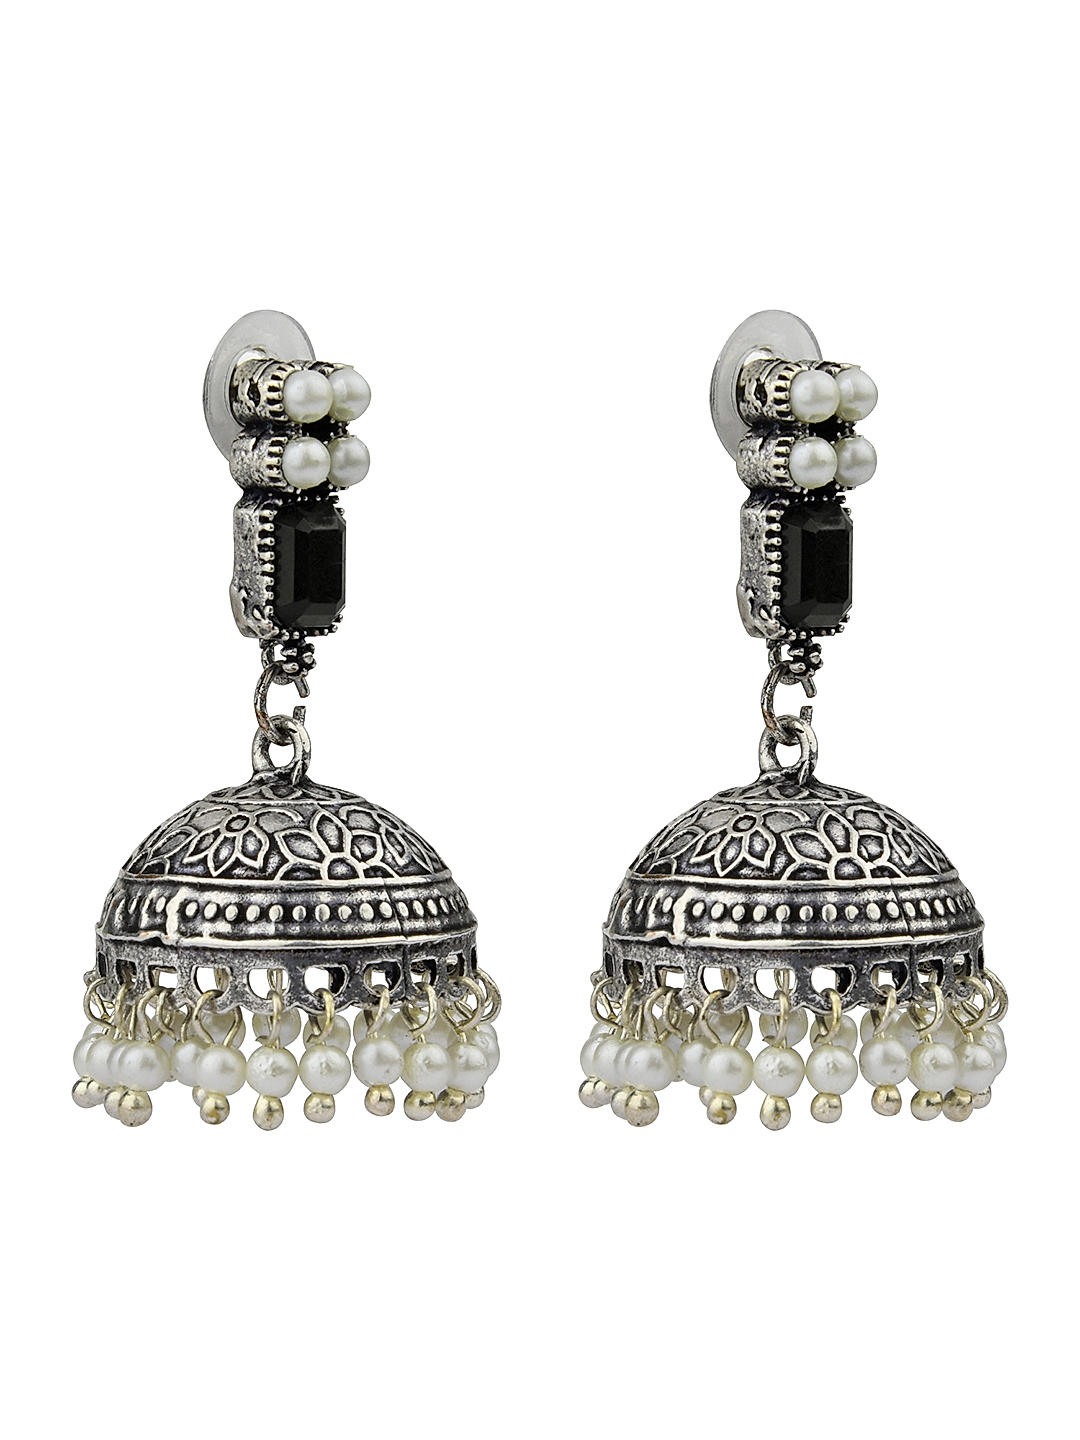 Black Metal Earrings for Black Saree | FashionCrab.com